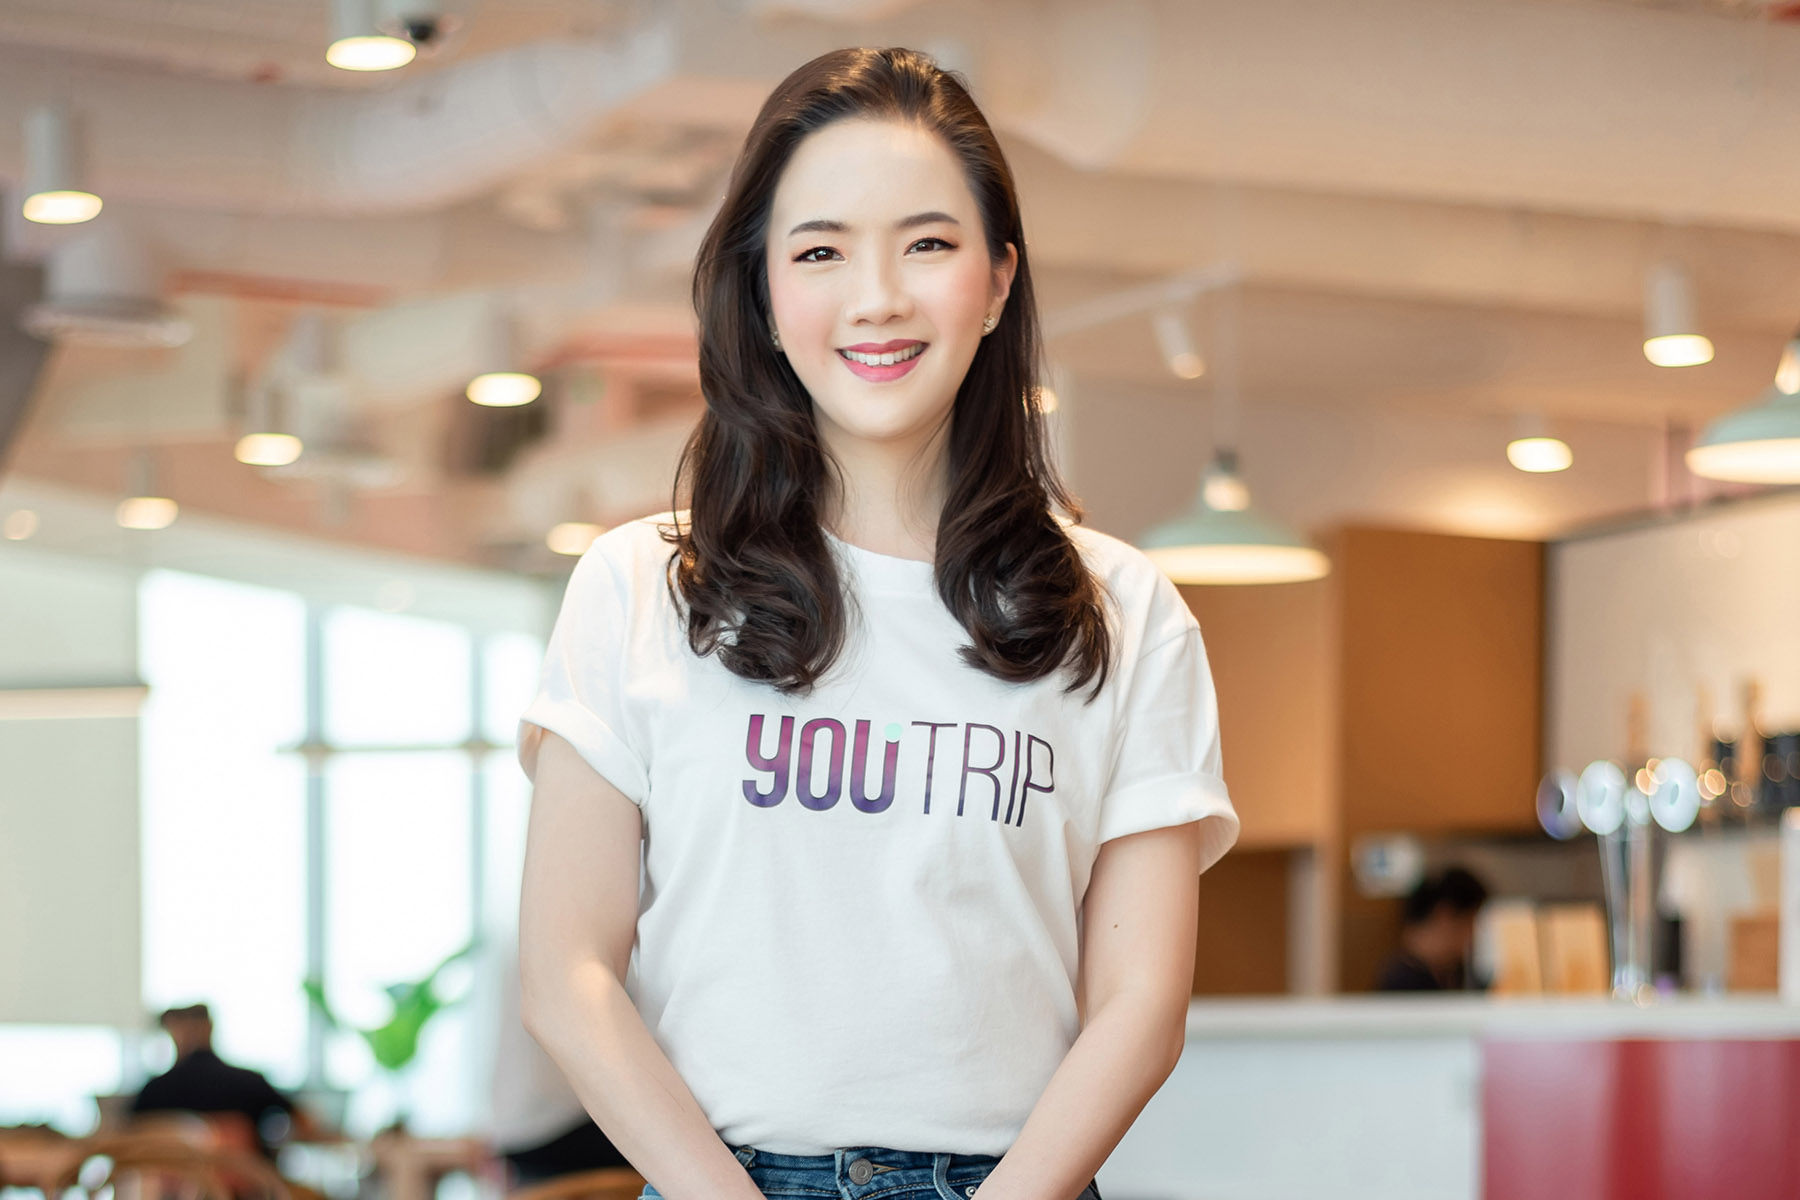 YouTrip เผยสัญญาณบวกหลังเปิดประเทศ พบคนไทย 7 ใน 10 พร้อมออกท่องโลกอีกครั้งใน 6 เดือนข้างหน้า